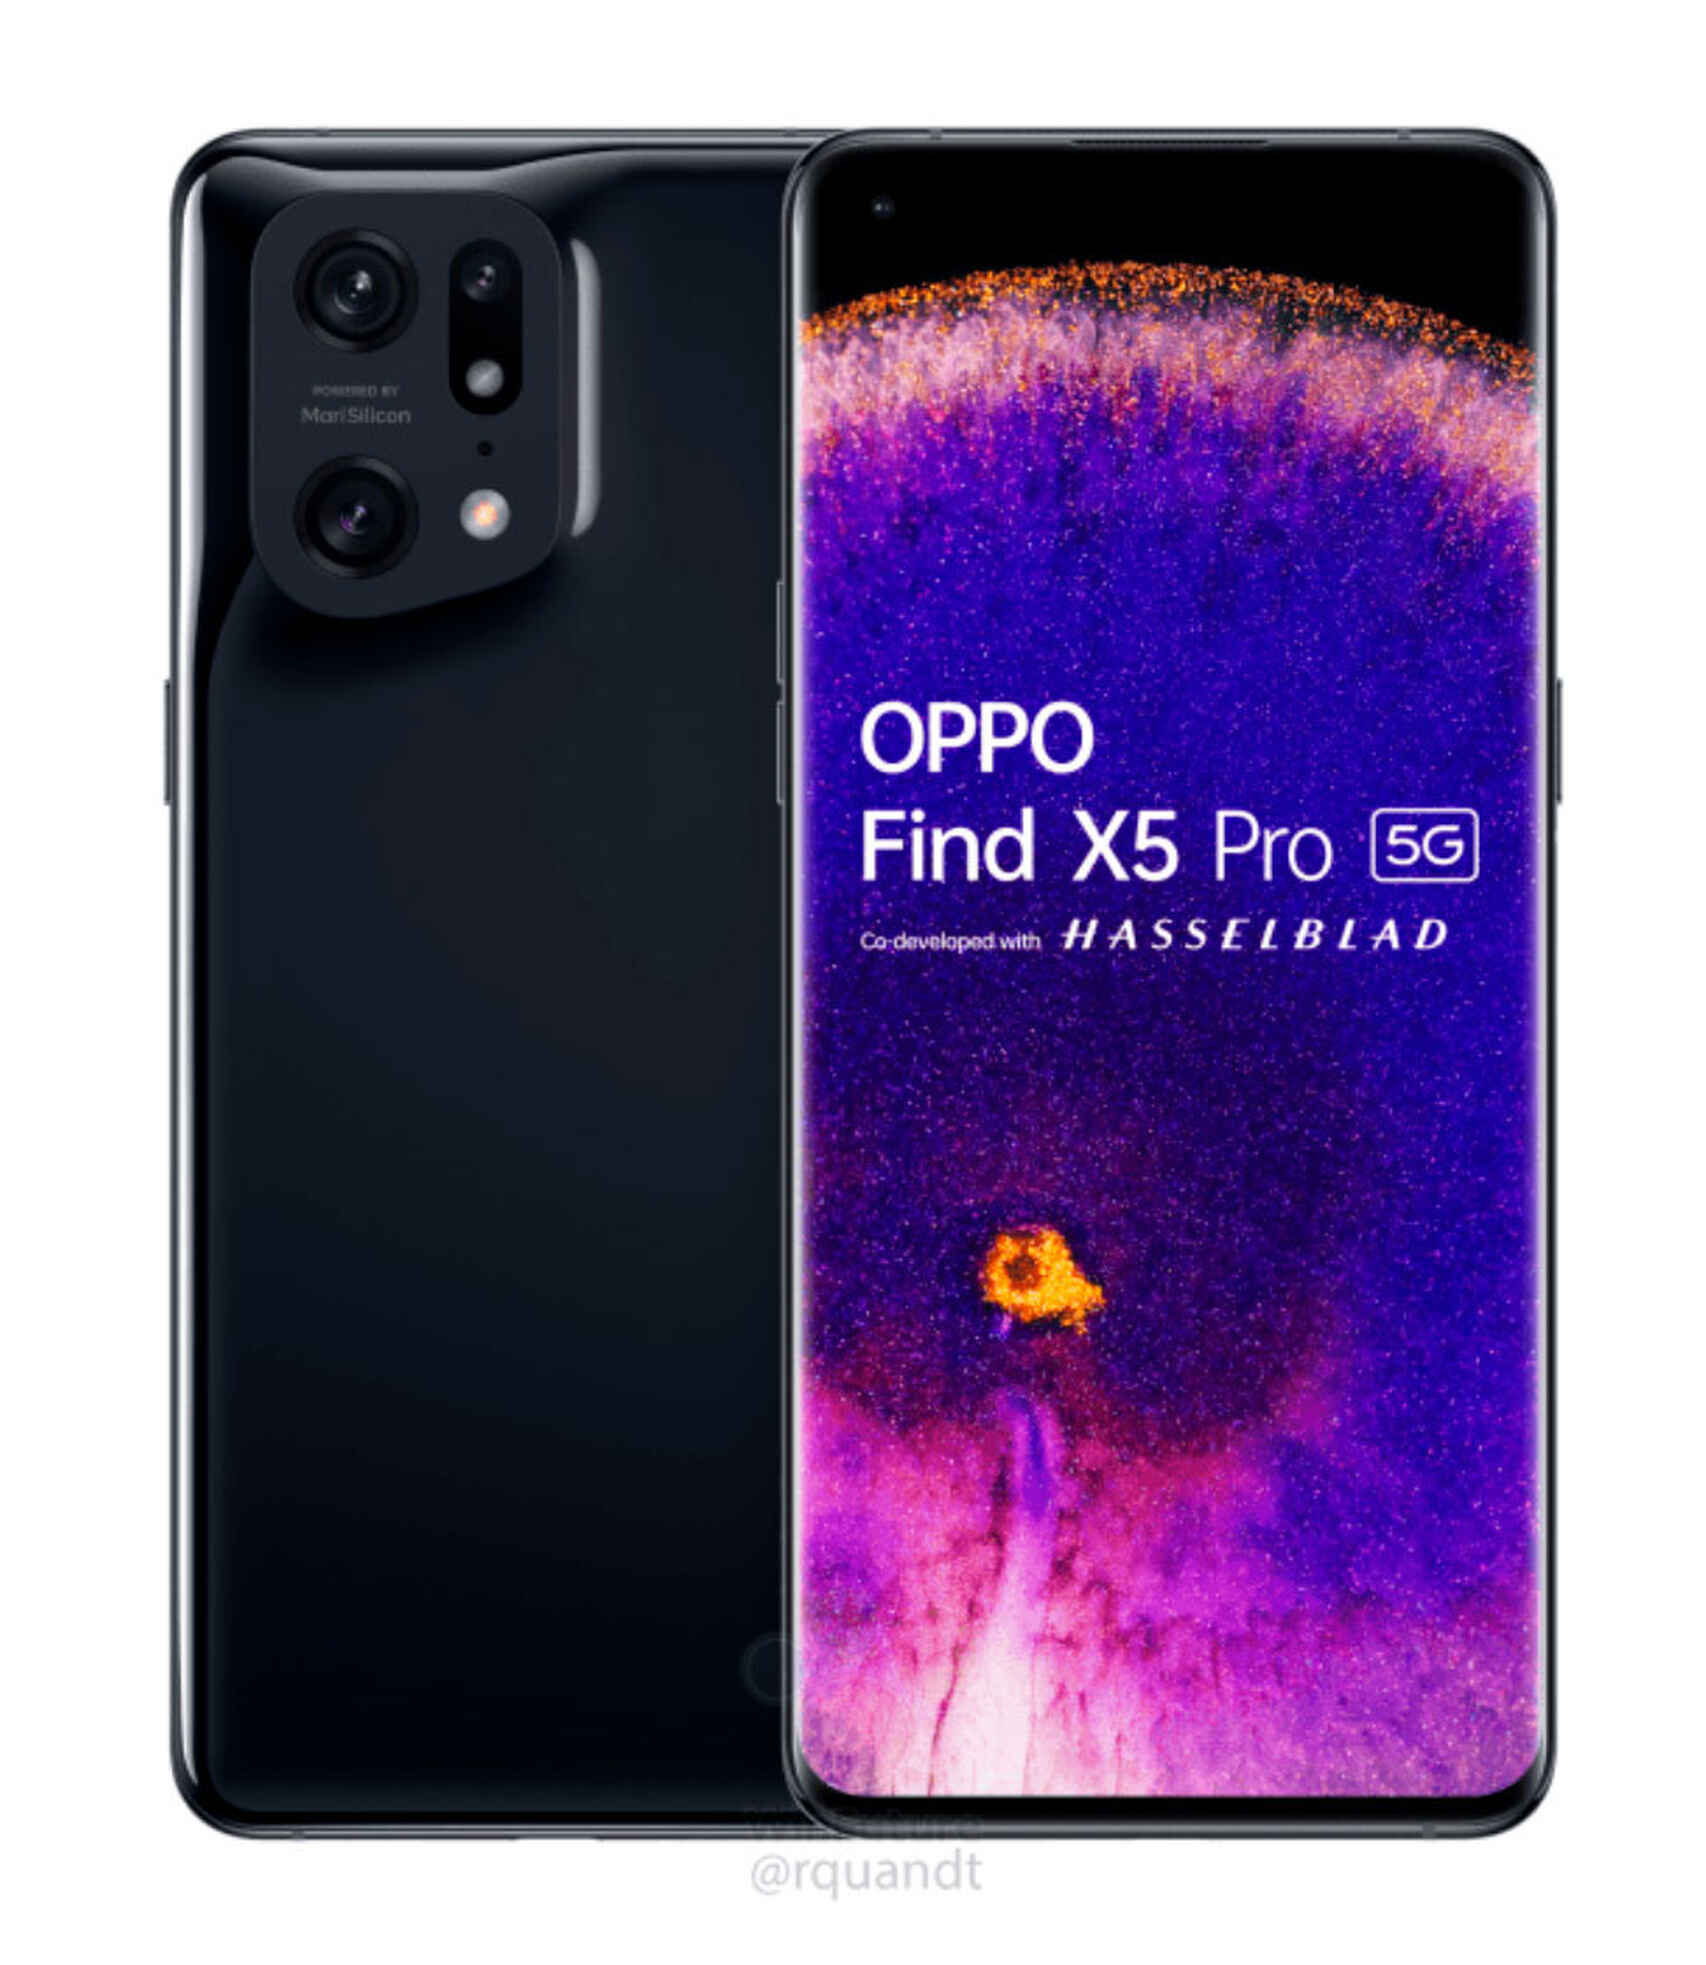 El OPPO Find X5 Pro se ha filtrado por completo y presume de ser